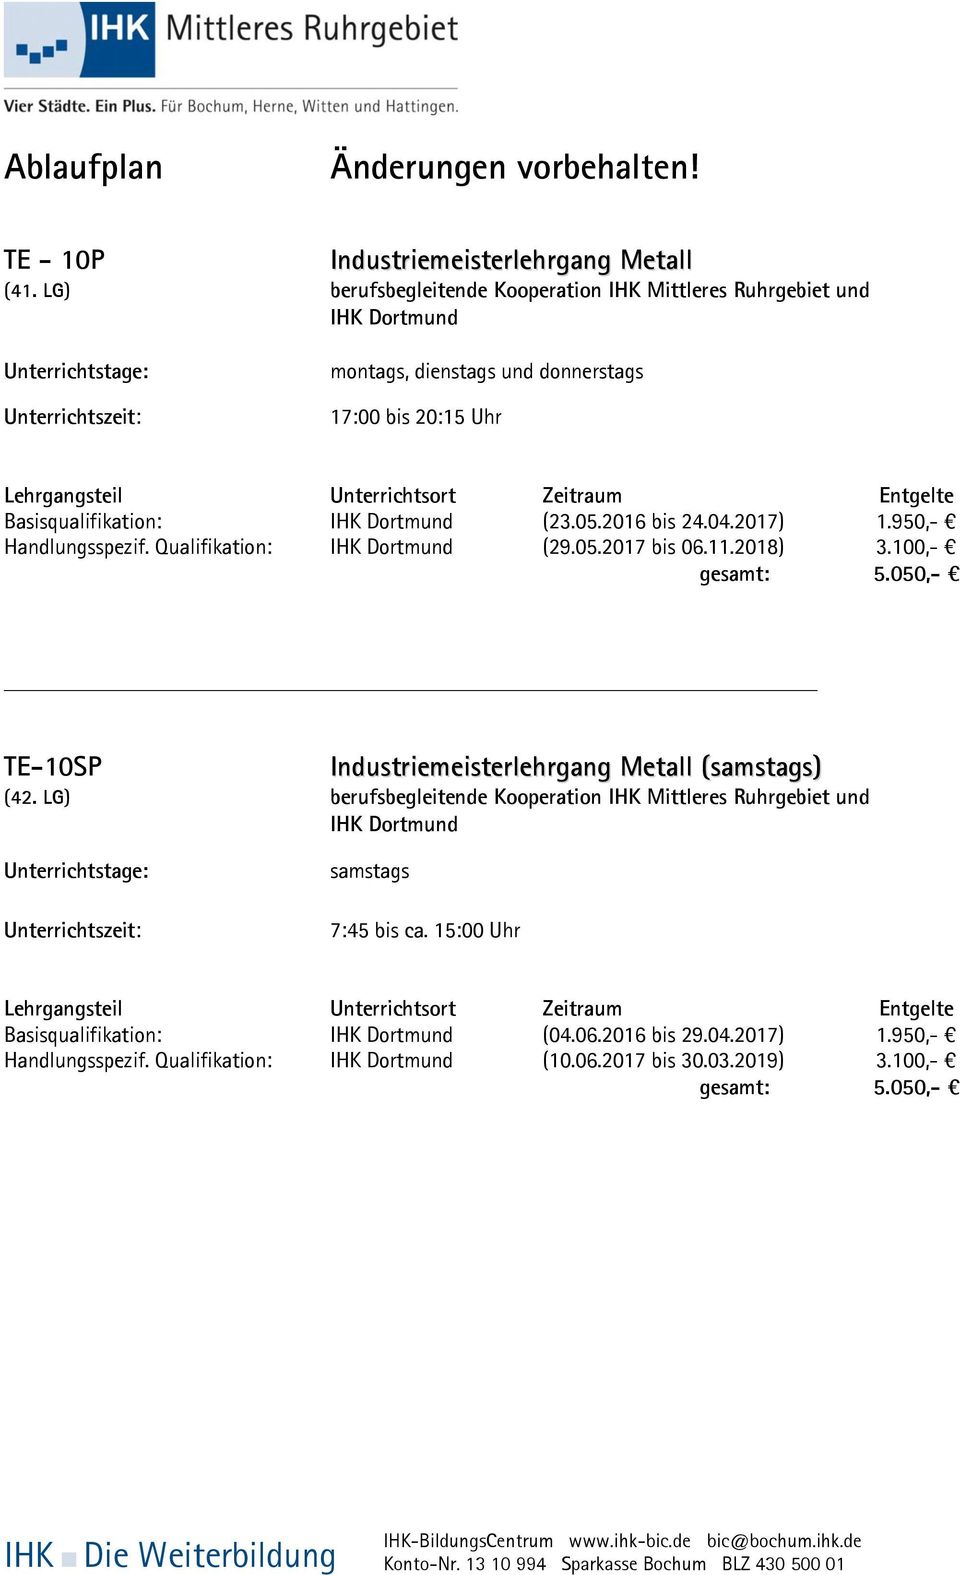 Zeitraum Entgelte Basisqualifikation: IHK Dortmund (23.05.2016 bis 24.04.2017) 1.950,- Handlungsspezif. Qualifikation: IHK Dortmund (29.05.2017 bis 06.11.2018) 3.100,- gesamt: 5.